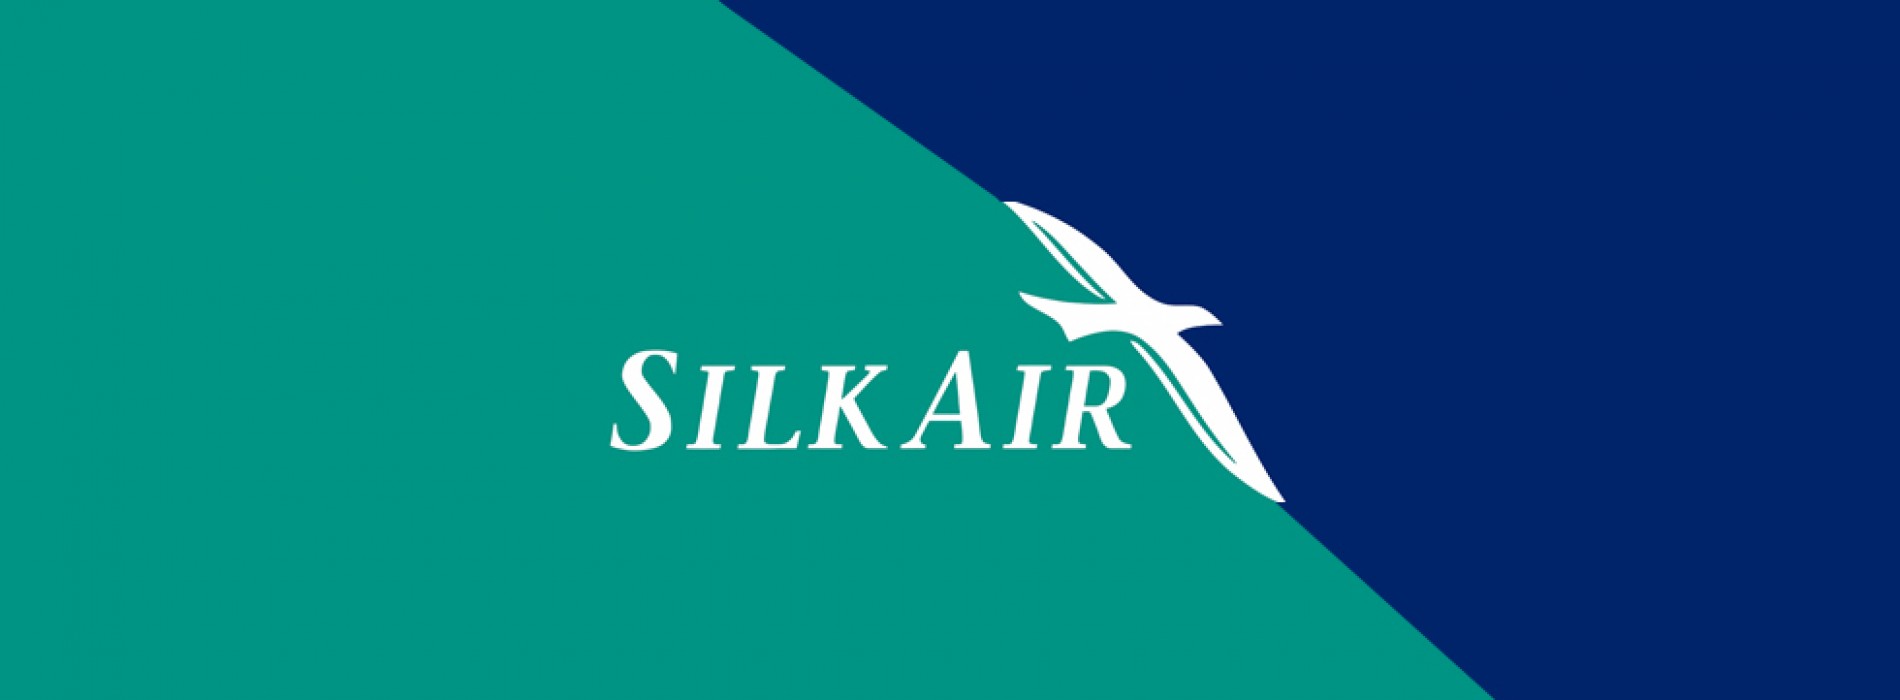 SilkAir announces New Year special fares